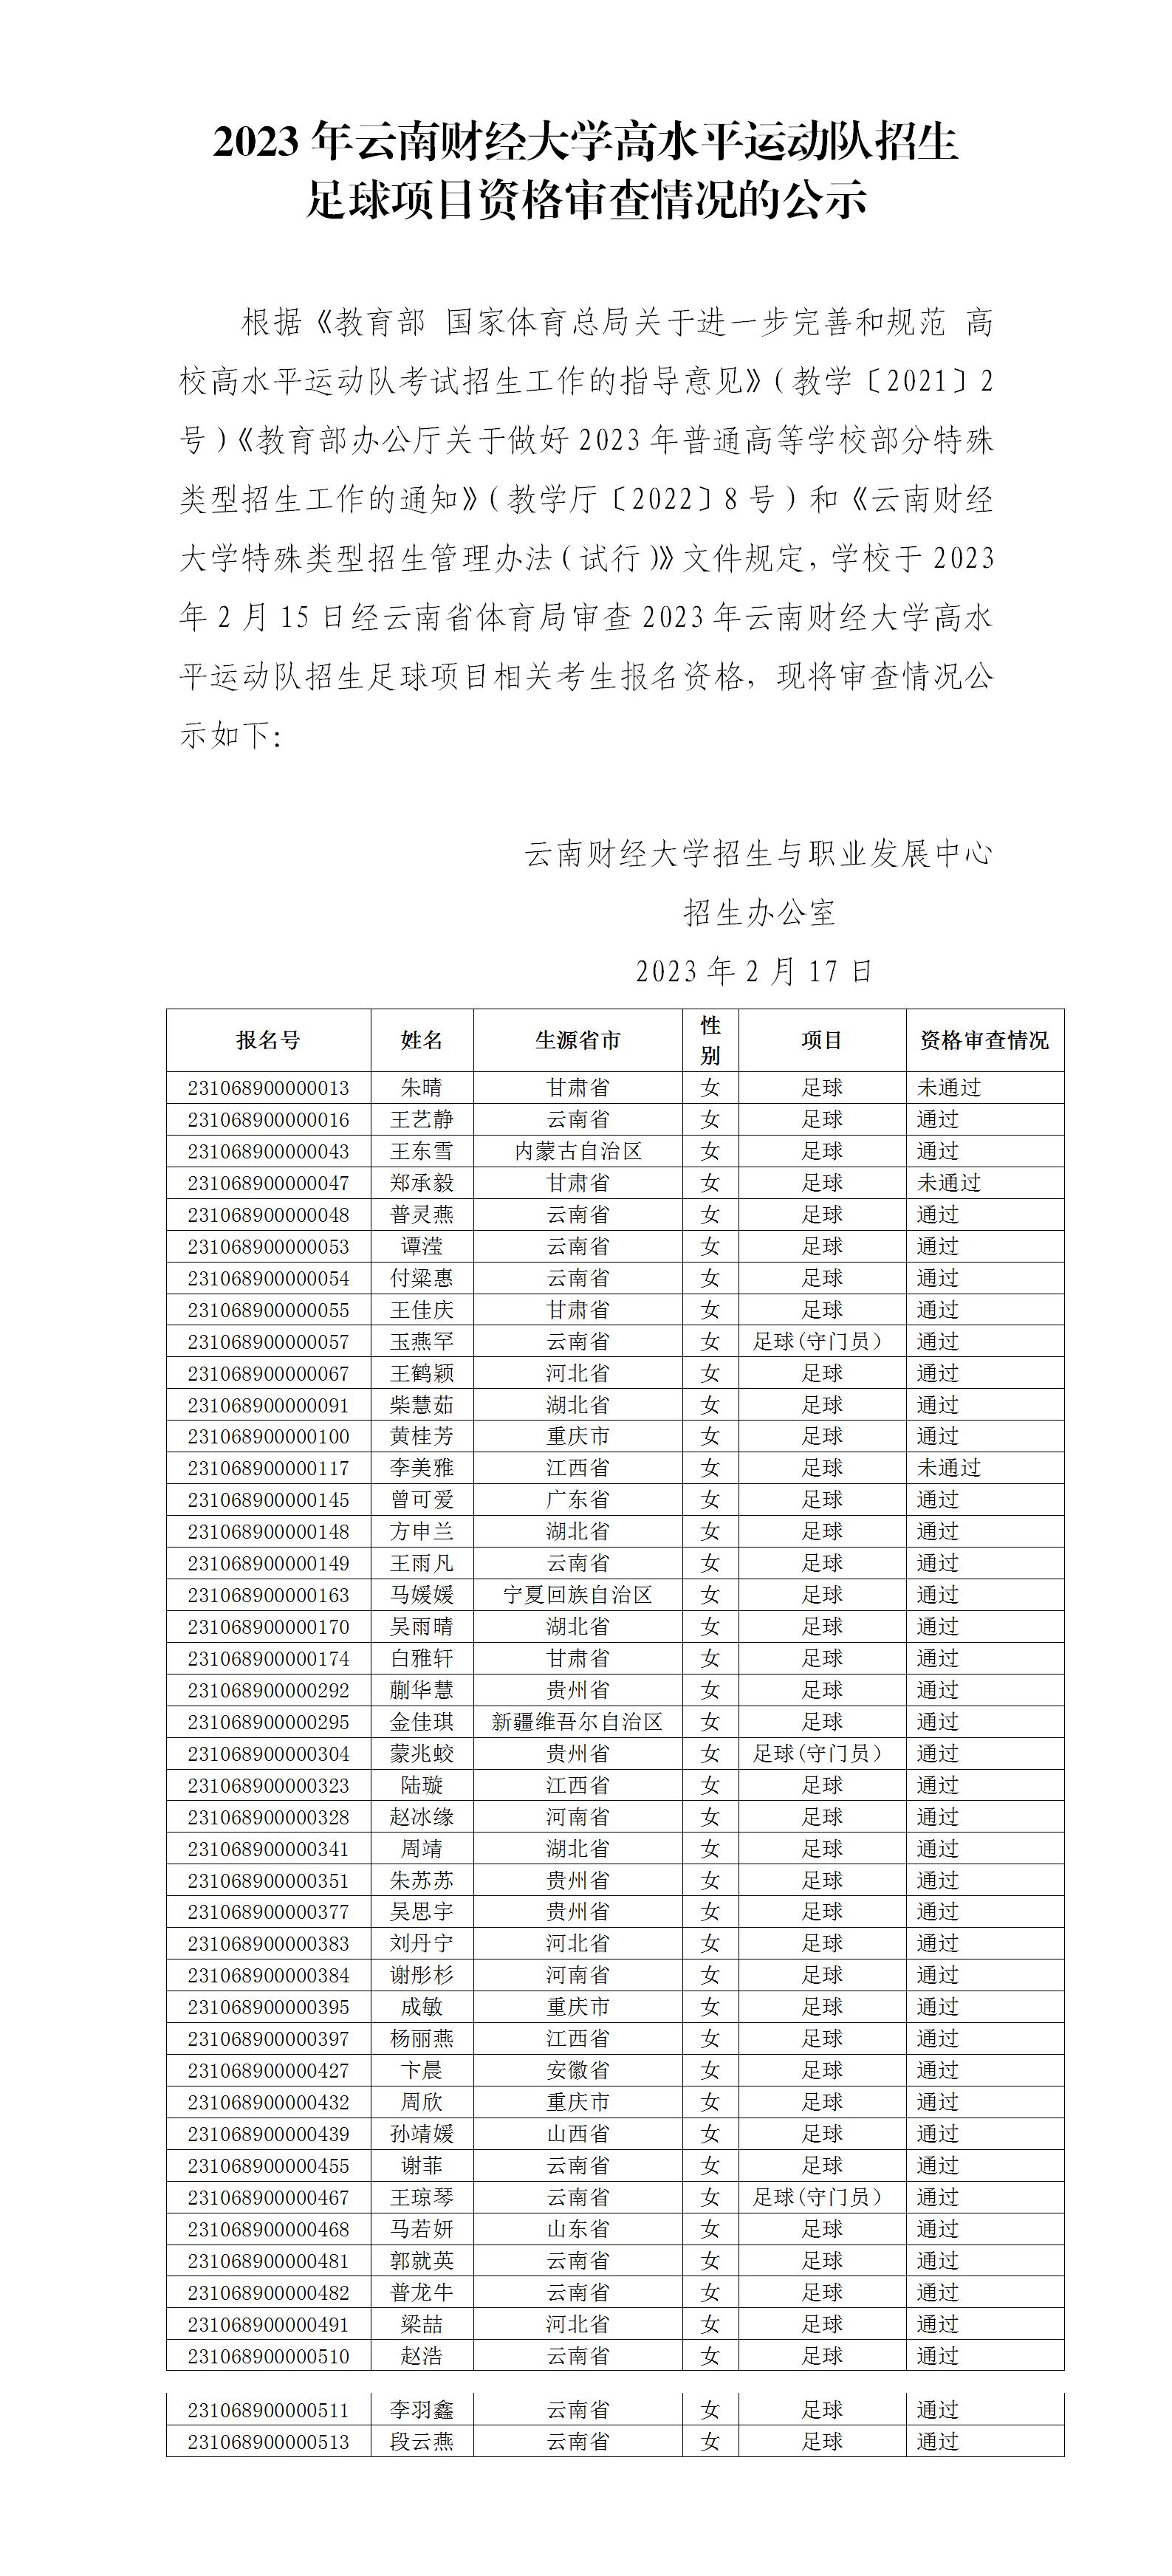 2023年云南财经大学高水平运动队招生足球项目资格审查情况的公示_01.jpg